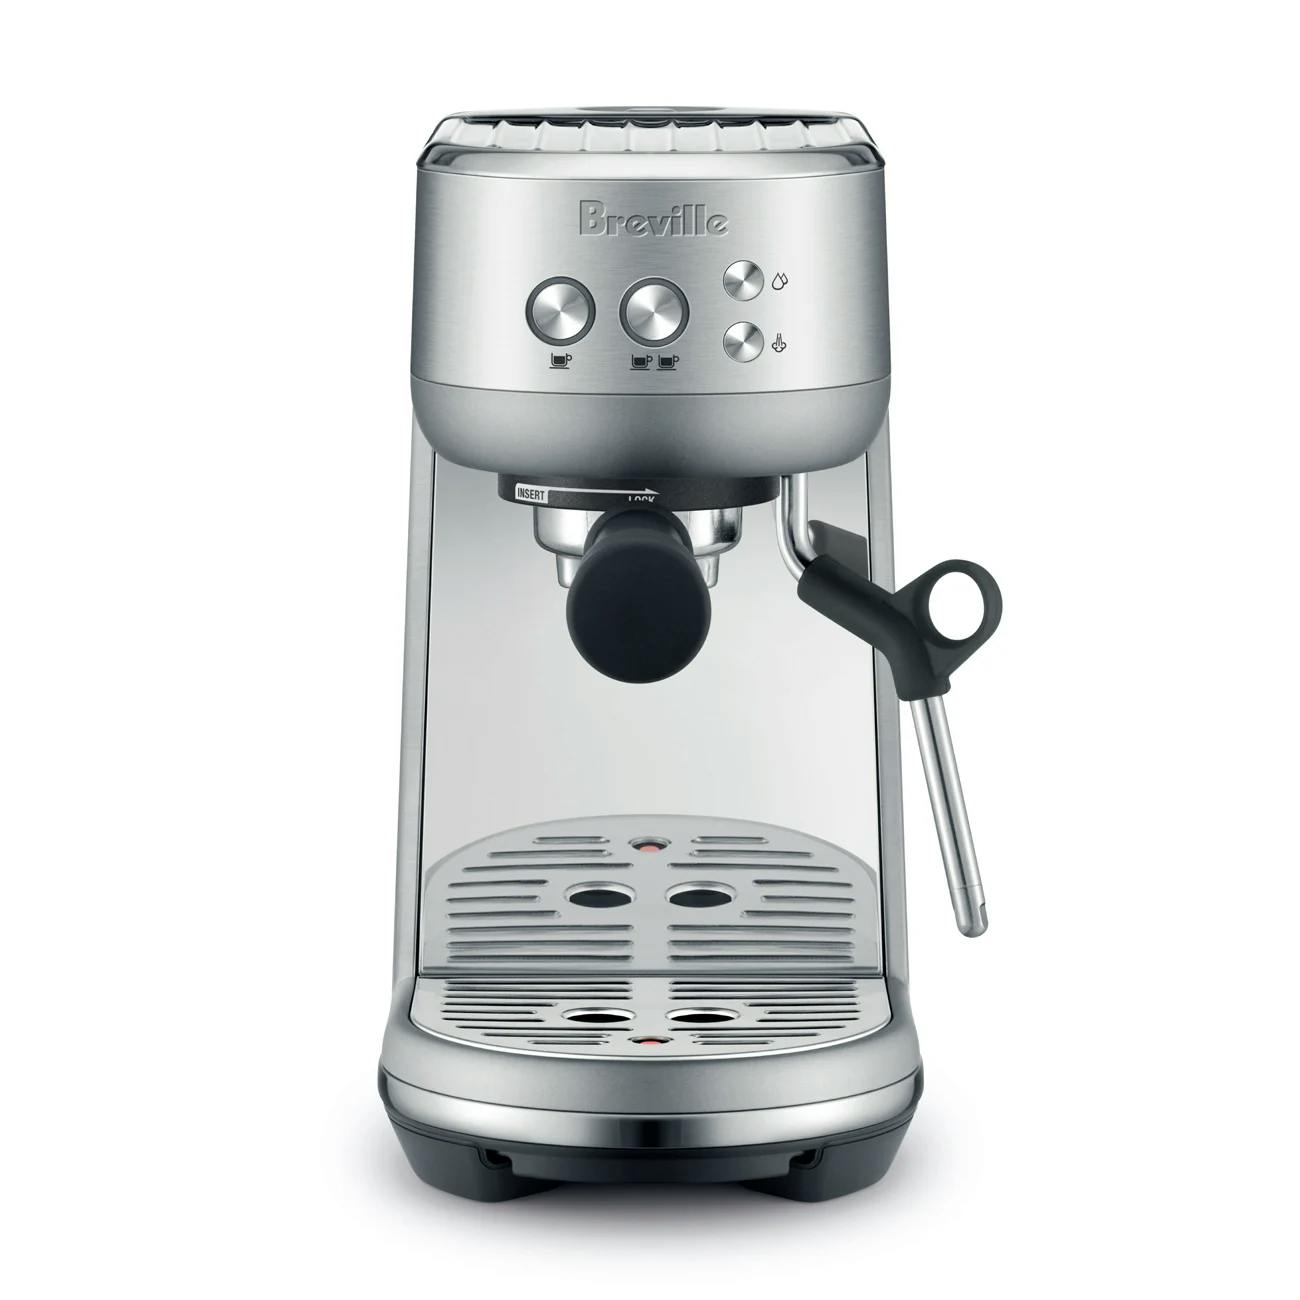 Product image of the Breville Bambino Espresso Machine.